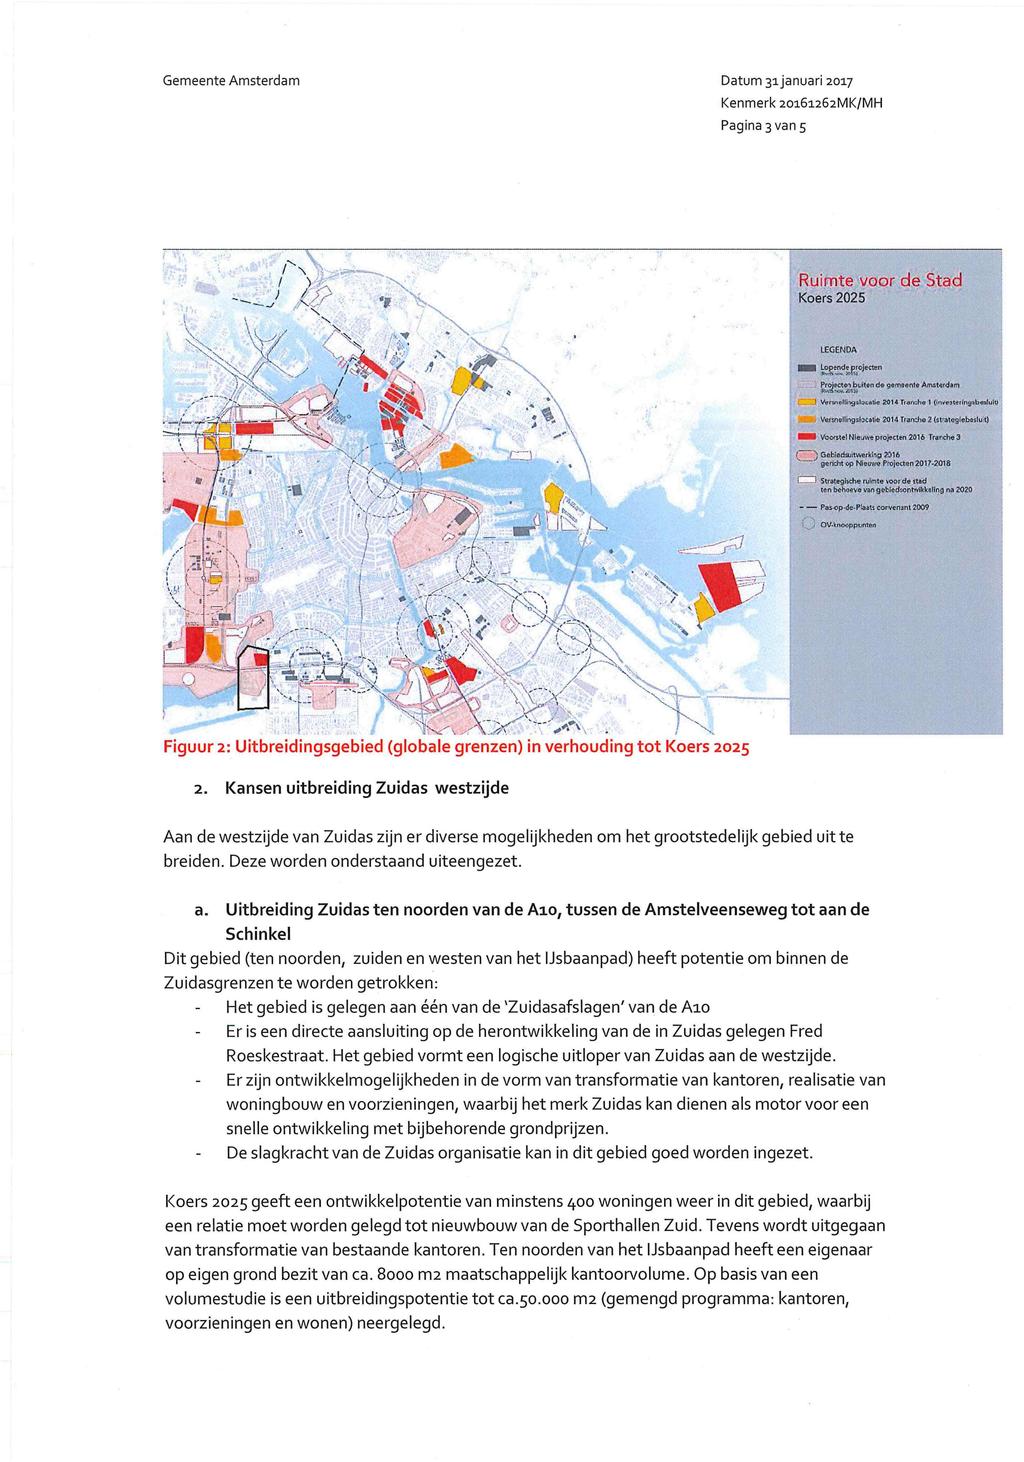 Gemeente Amsterdam Datum 31 januari 2017 Pagina 3 van 5 Ruimte voor de Stad Koers 2025 LEGENDA L,?per2drlaojecten,.